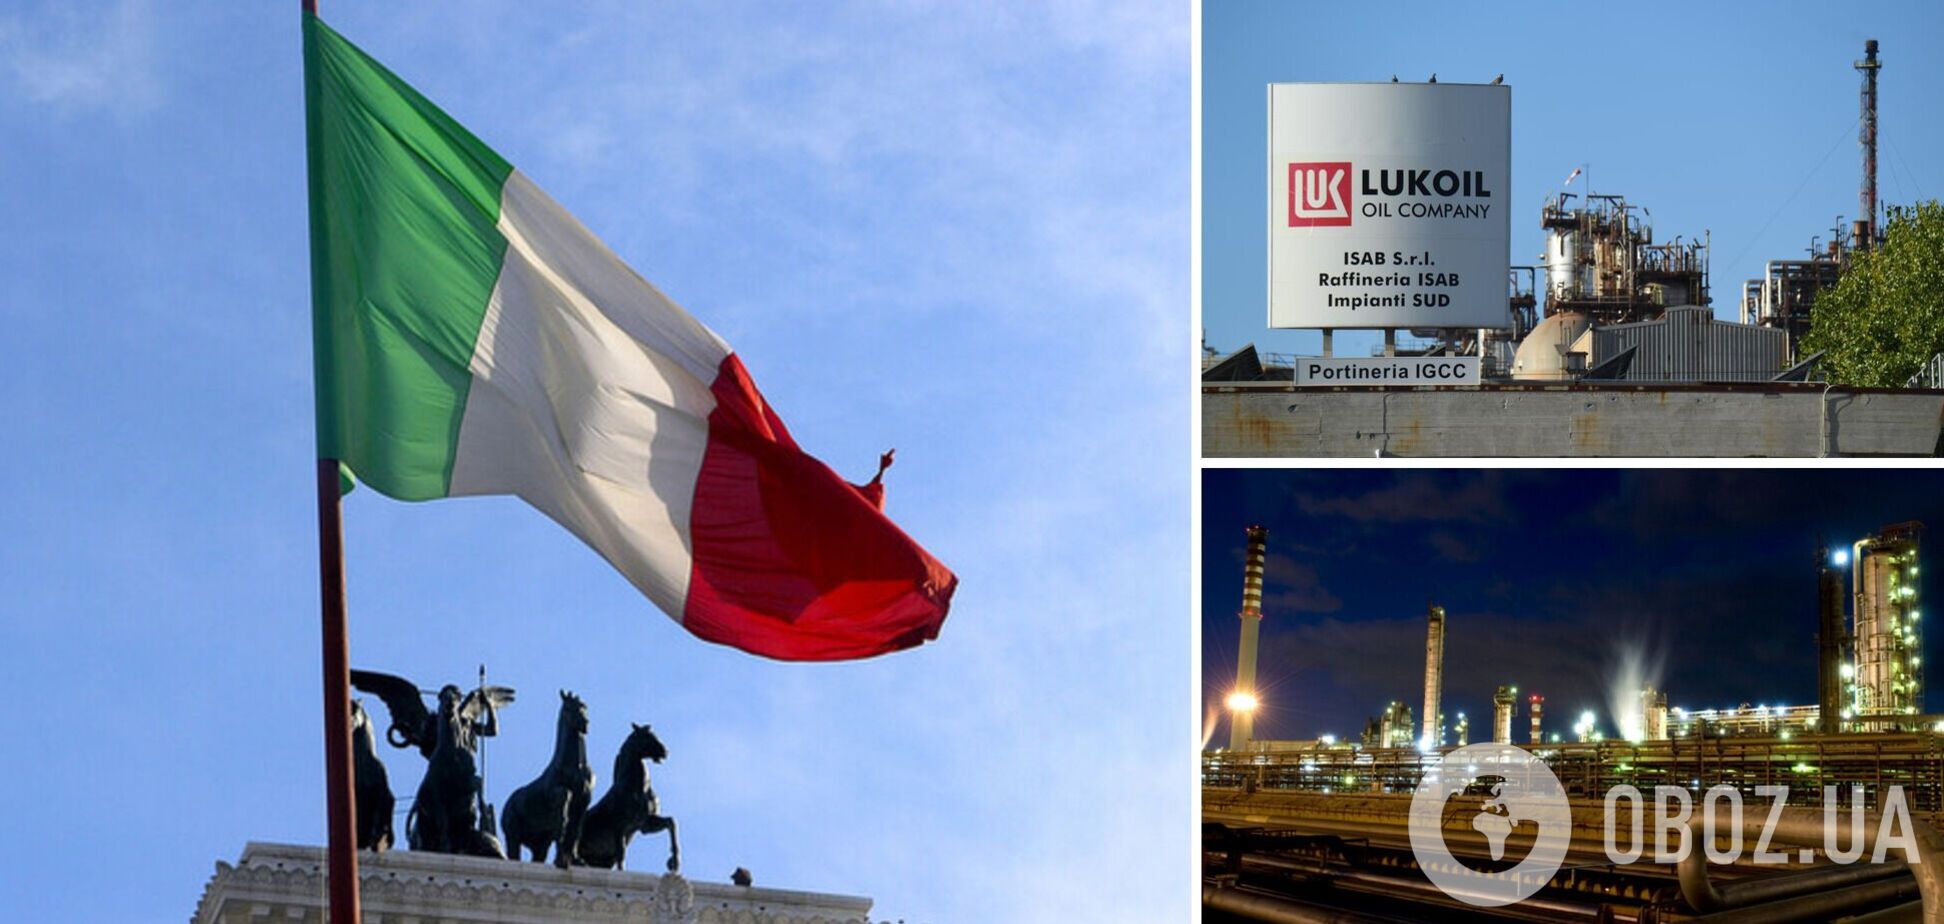 Правительство Италии установило государственное управление над крупнейшим НПЗ страны, принадлежащим 'Лукойлу'